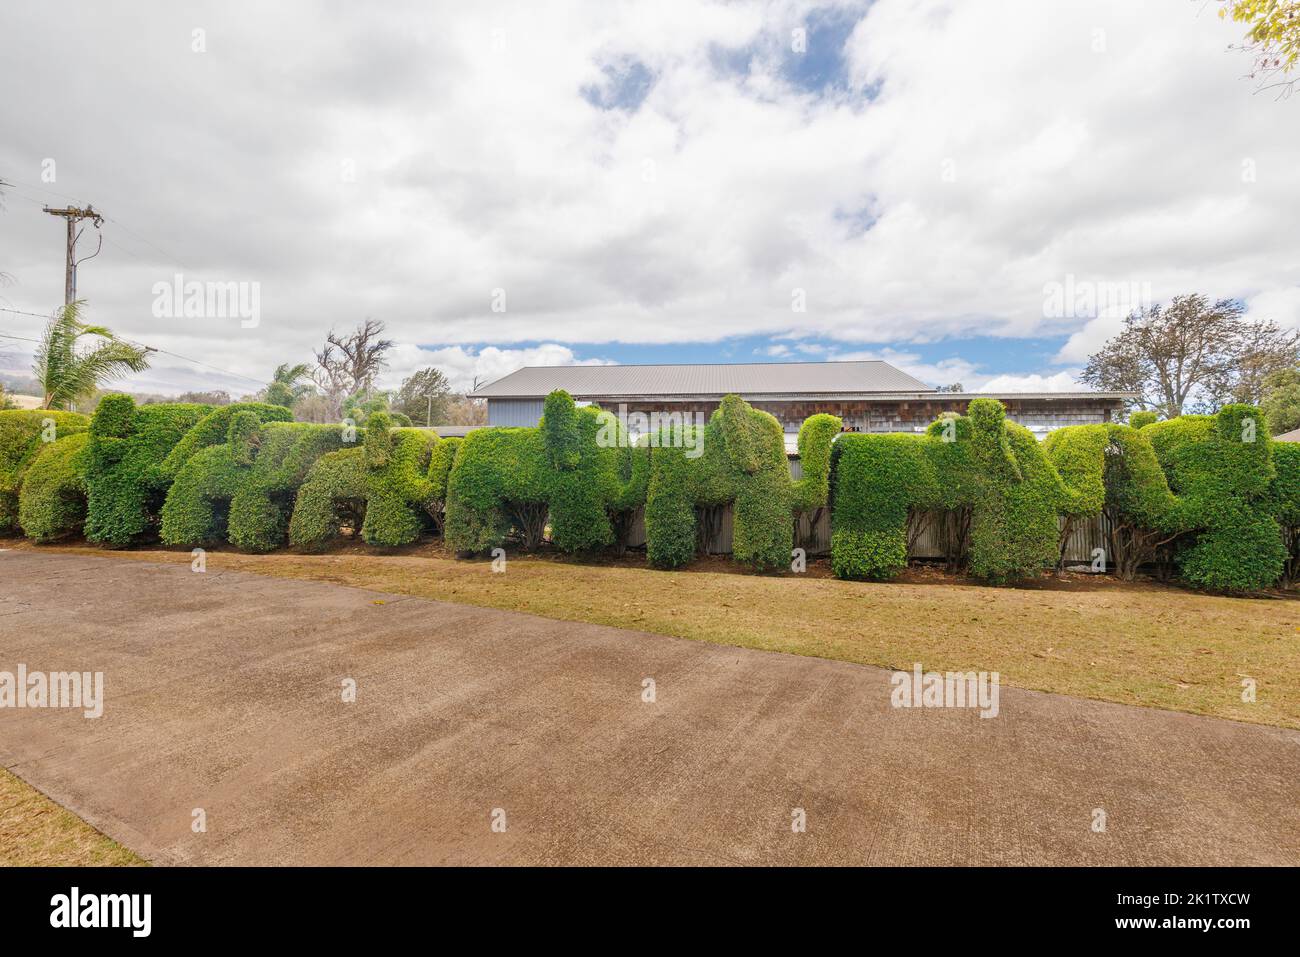 A decorative hedge in cut into the shape of elephants, Maui, Hawaii, USA. Stock Photo